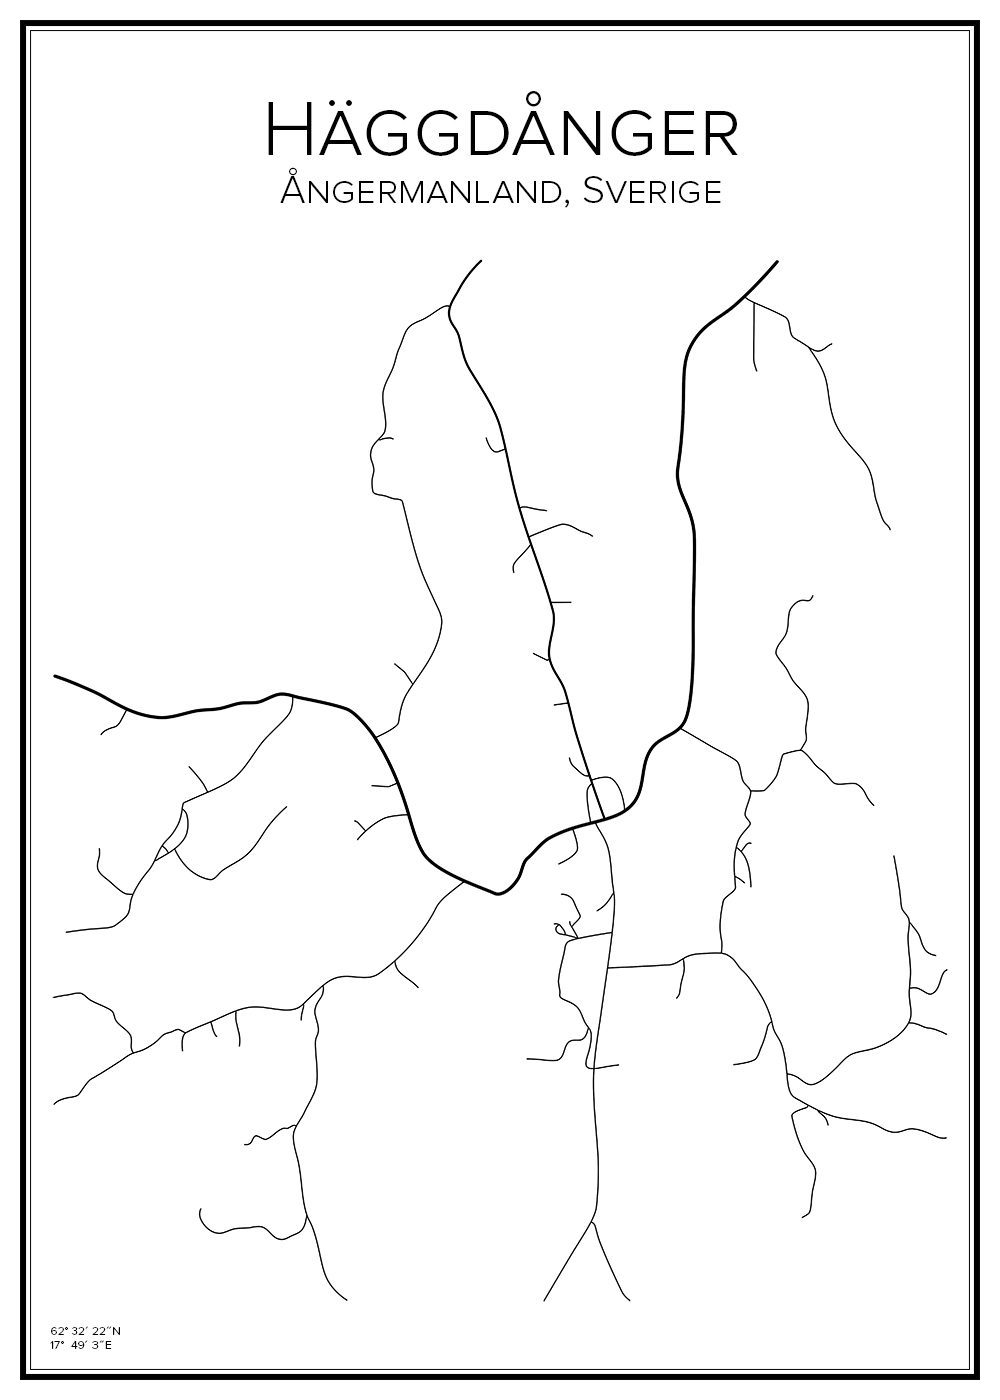 Stadskarta över Häggdånger